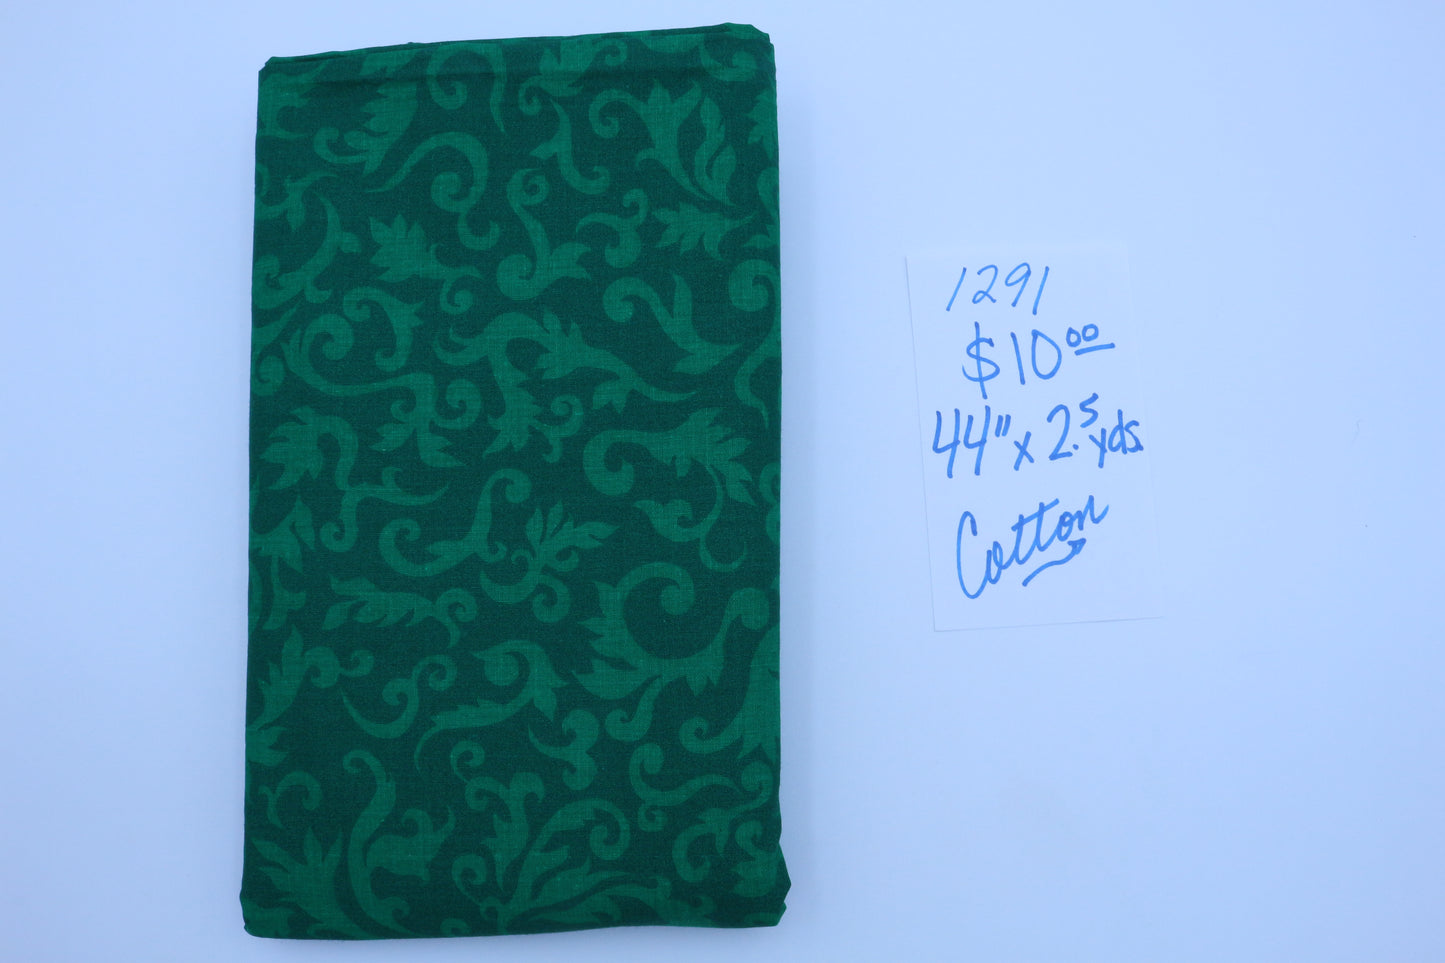 Green Summer Moss Cotton Fabric 4" x 2.5 yds